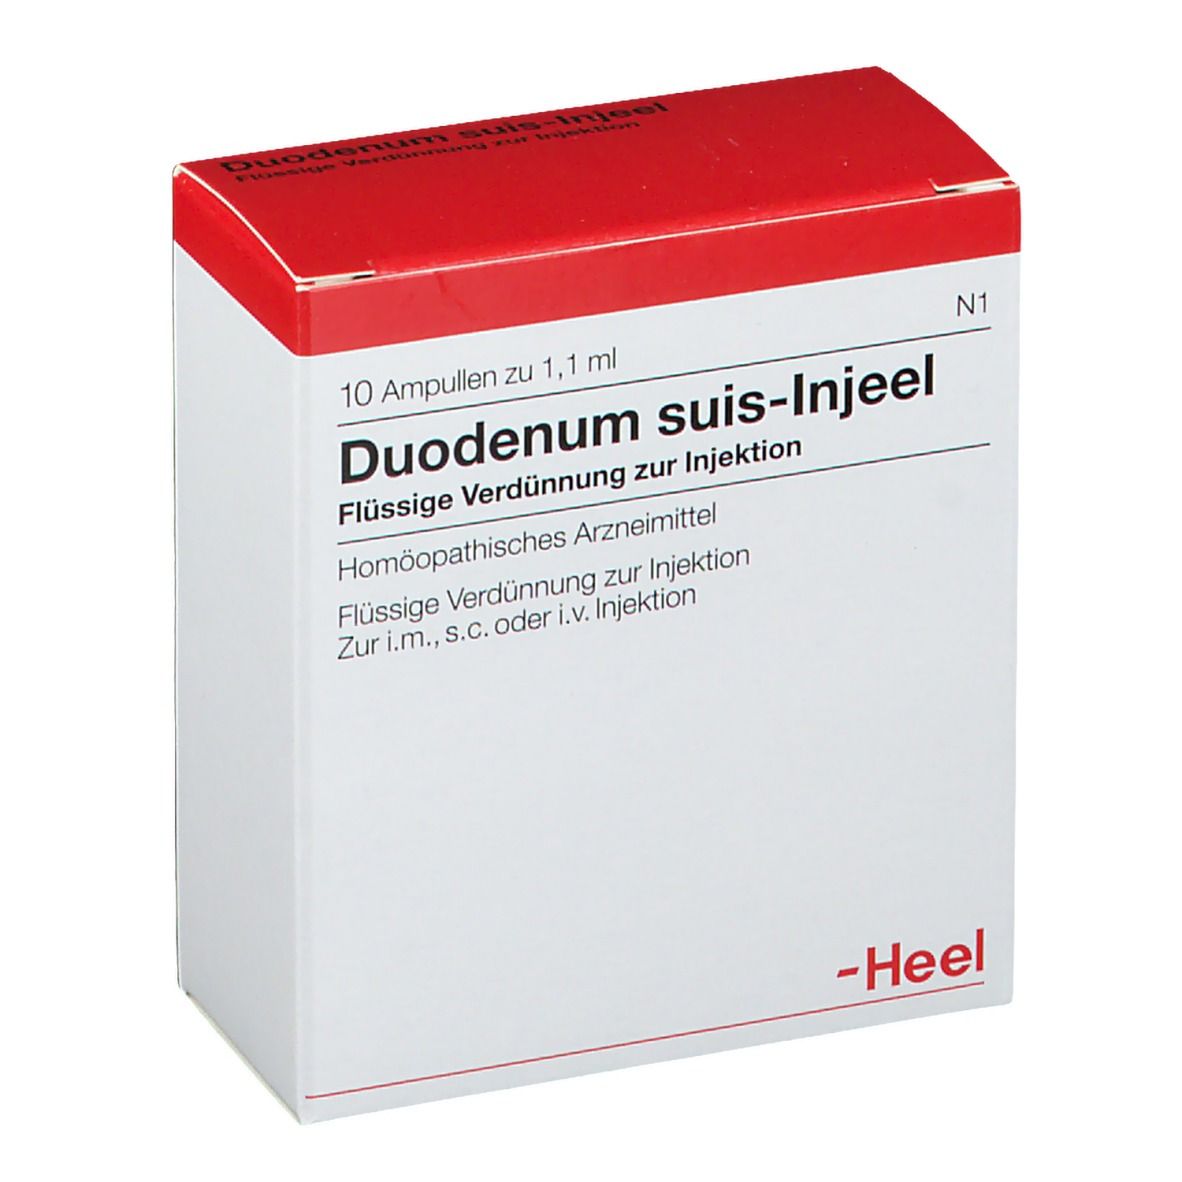 Duodenum suis-Injeel® Ampullen